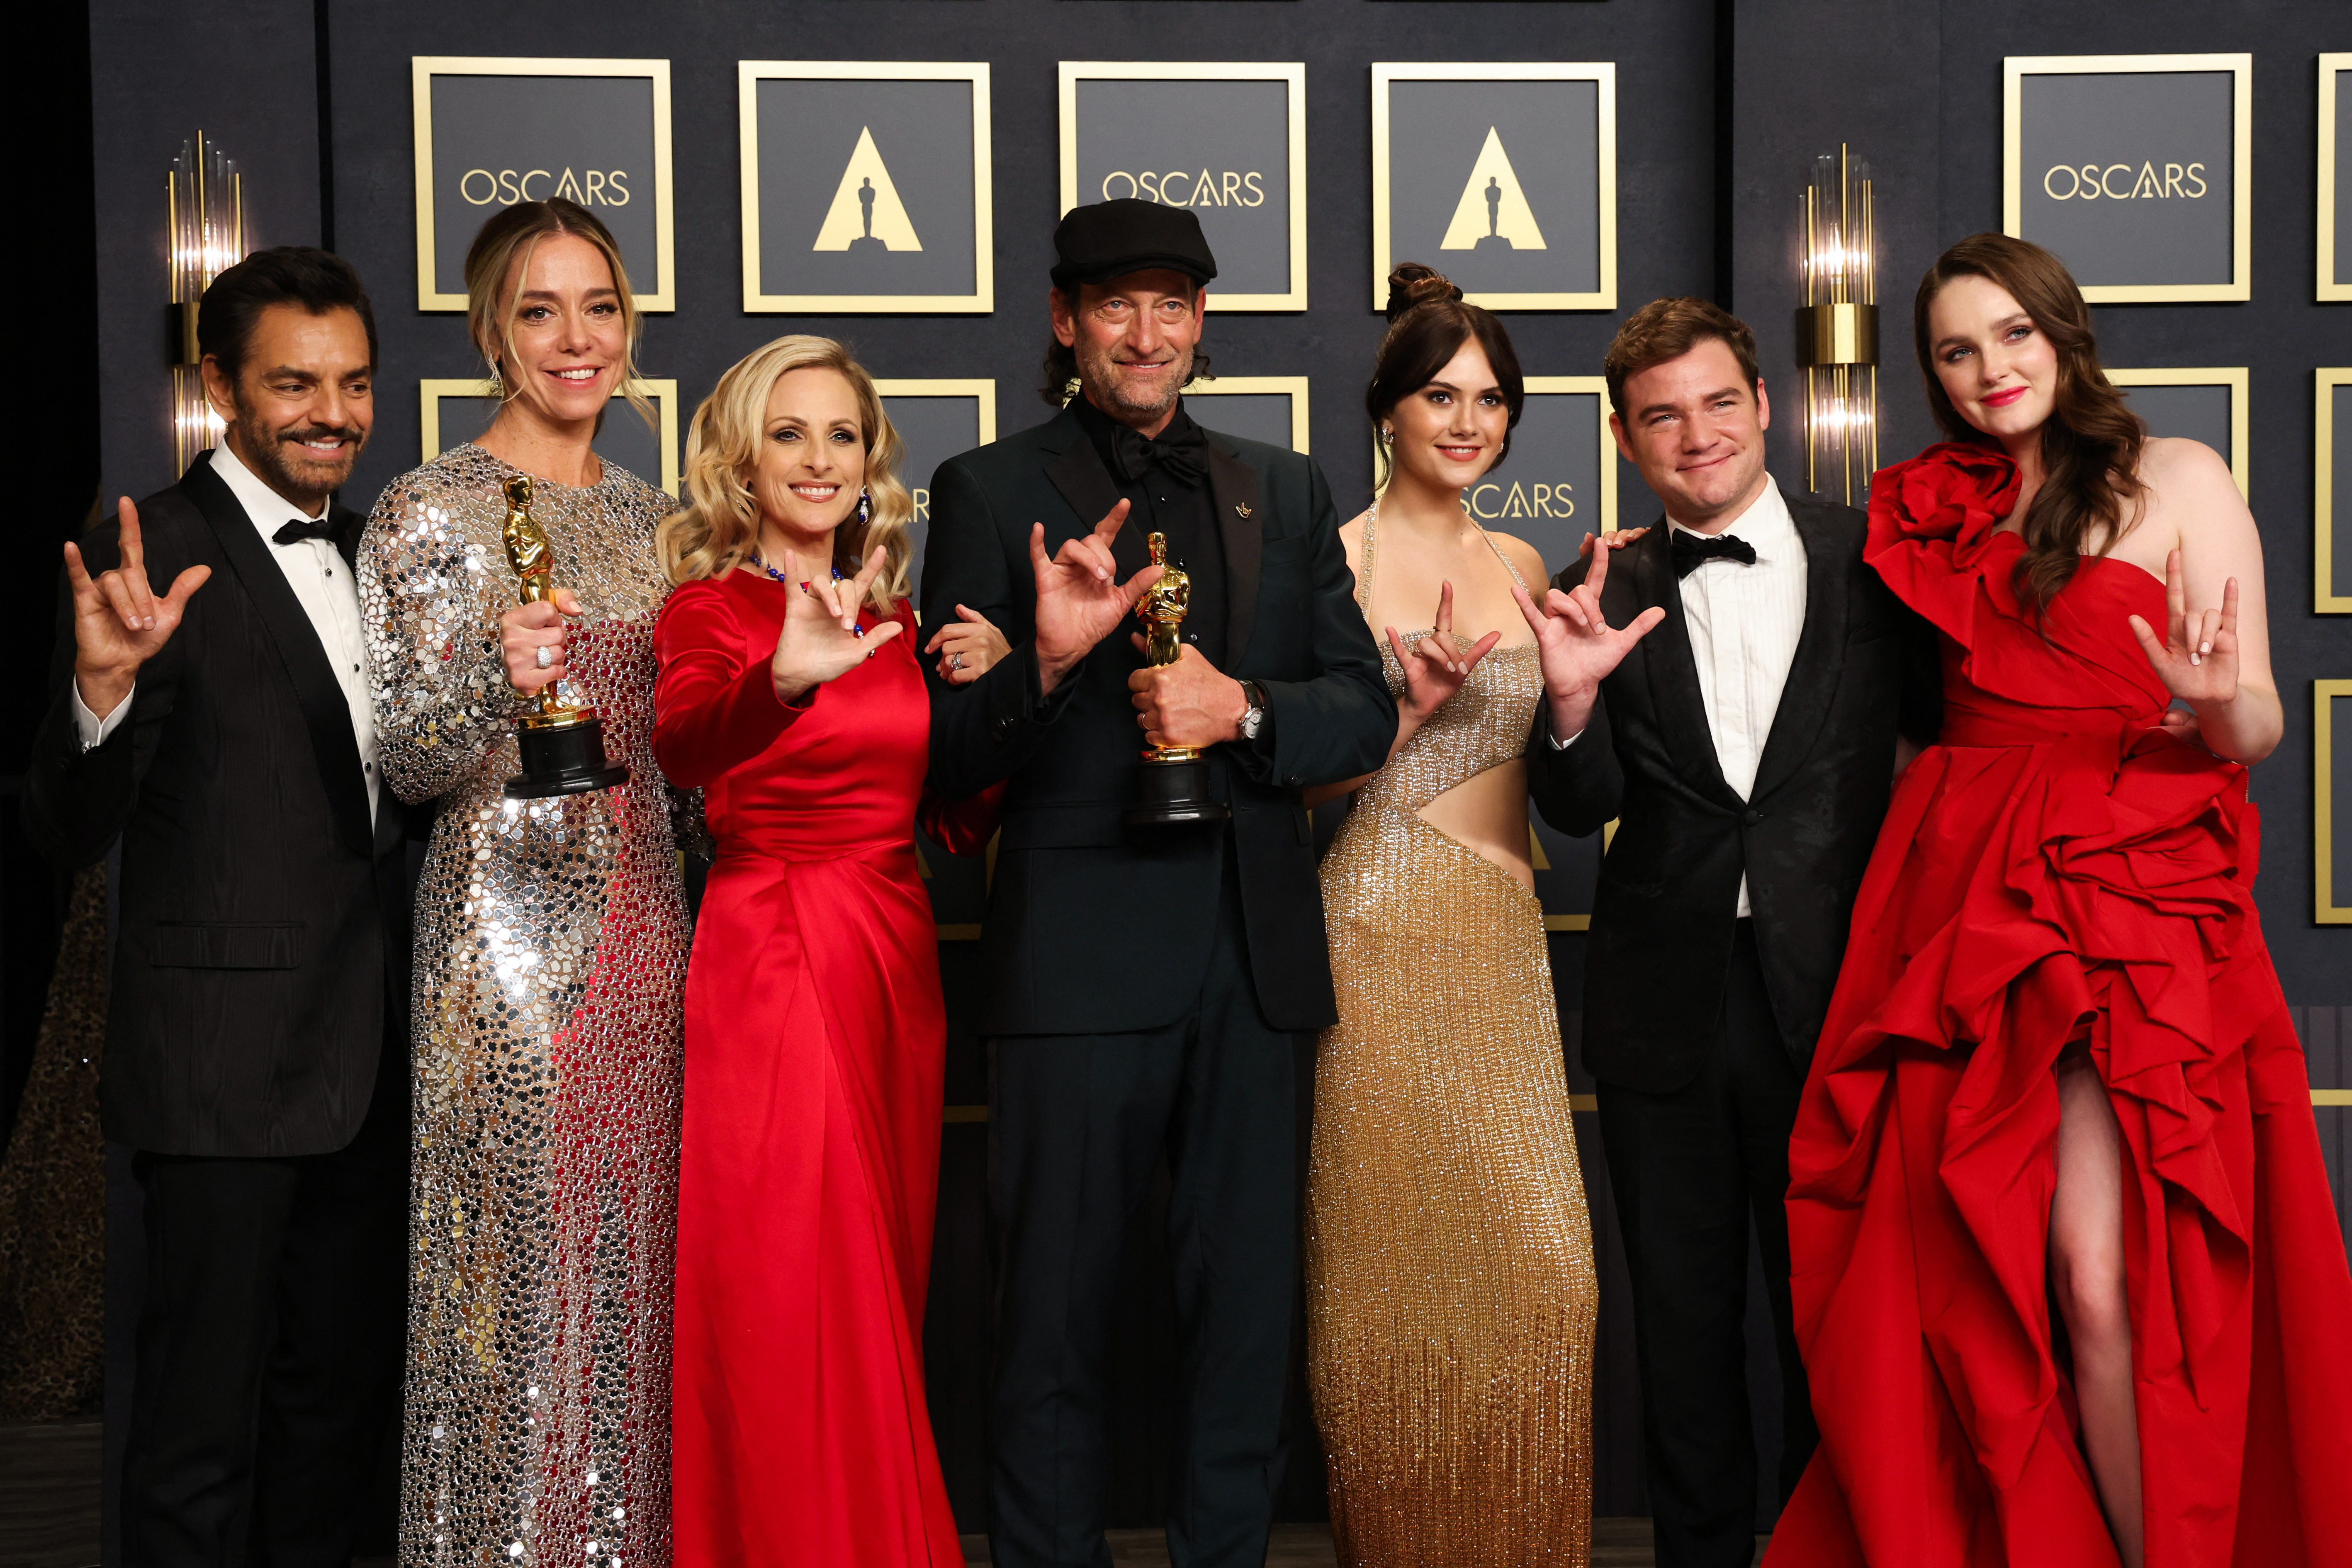 94th Academy Awards - Oscars Photo Room - Hollywood